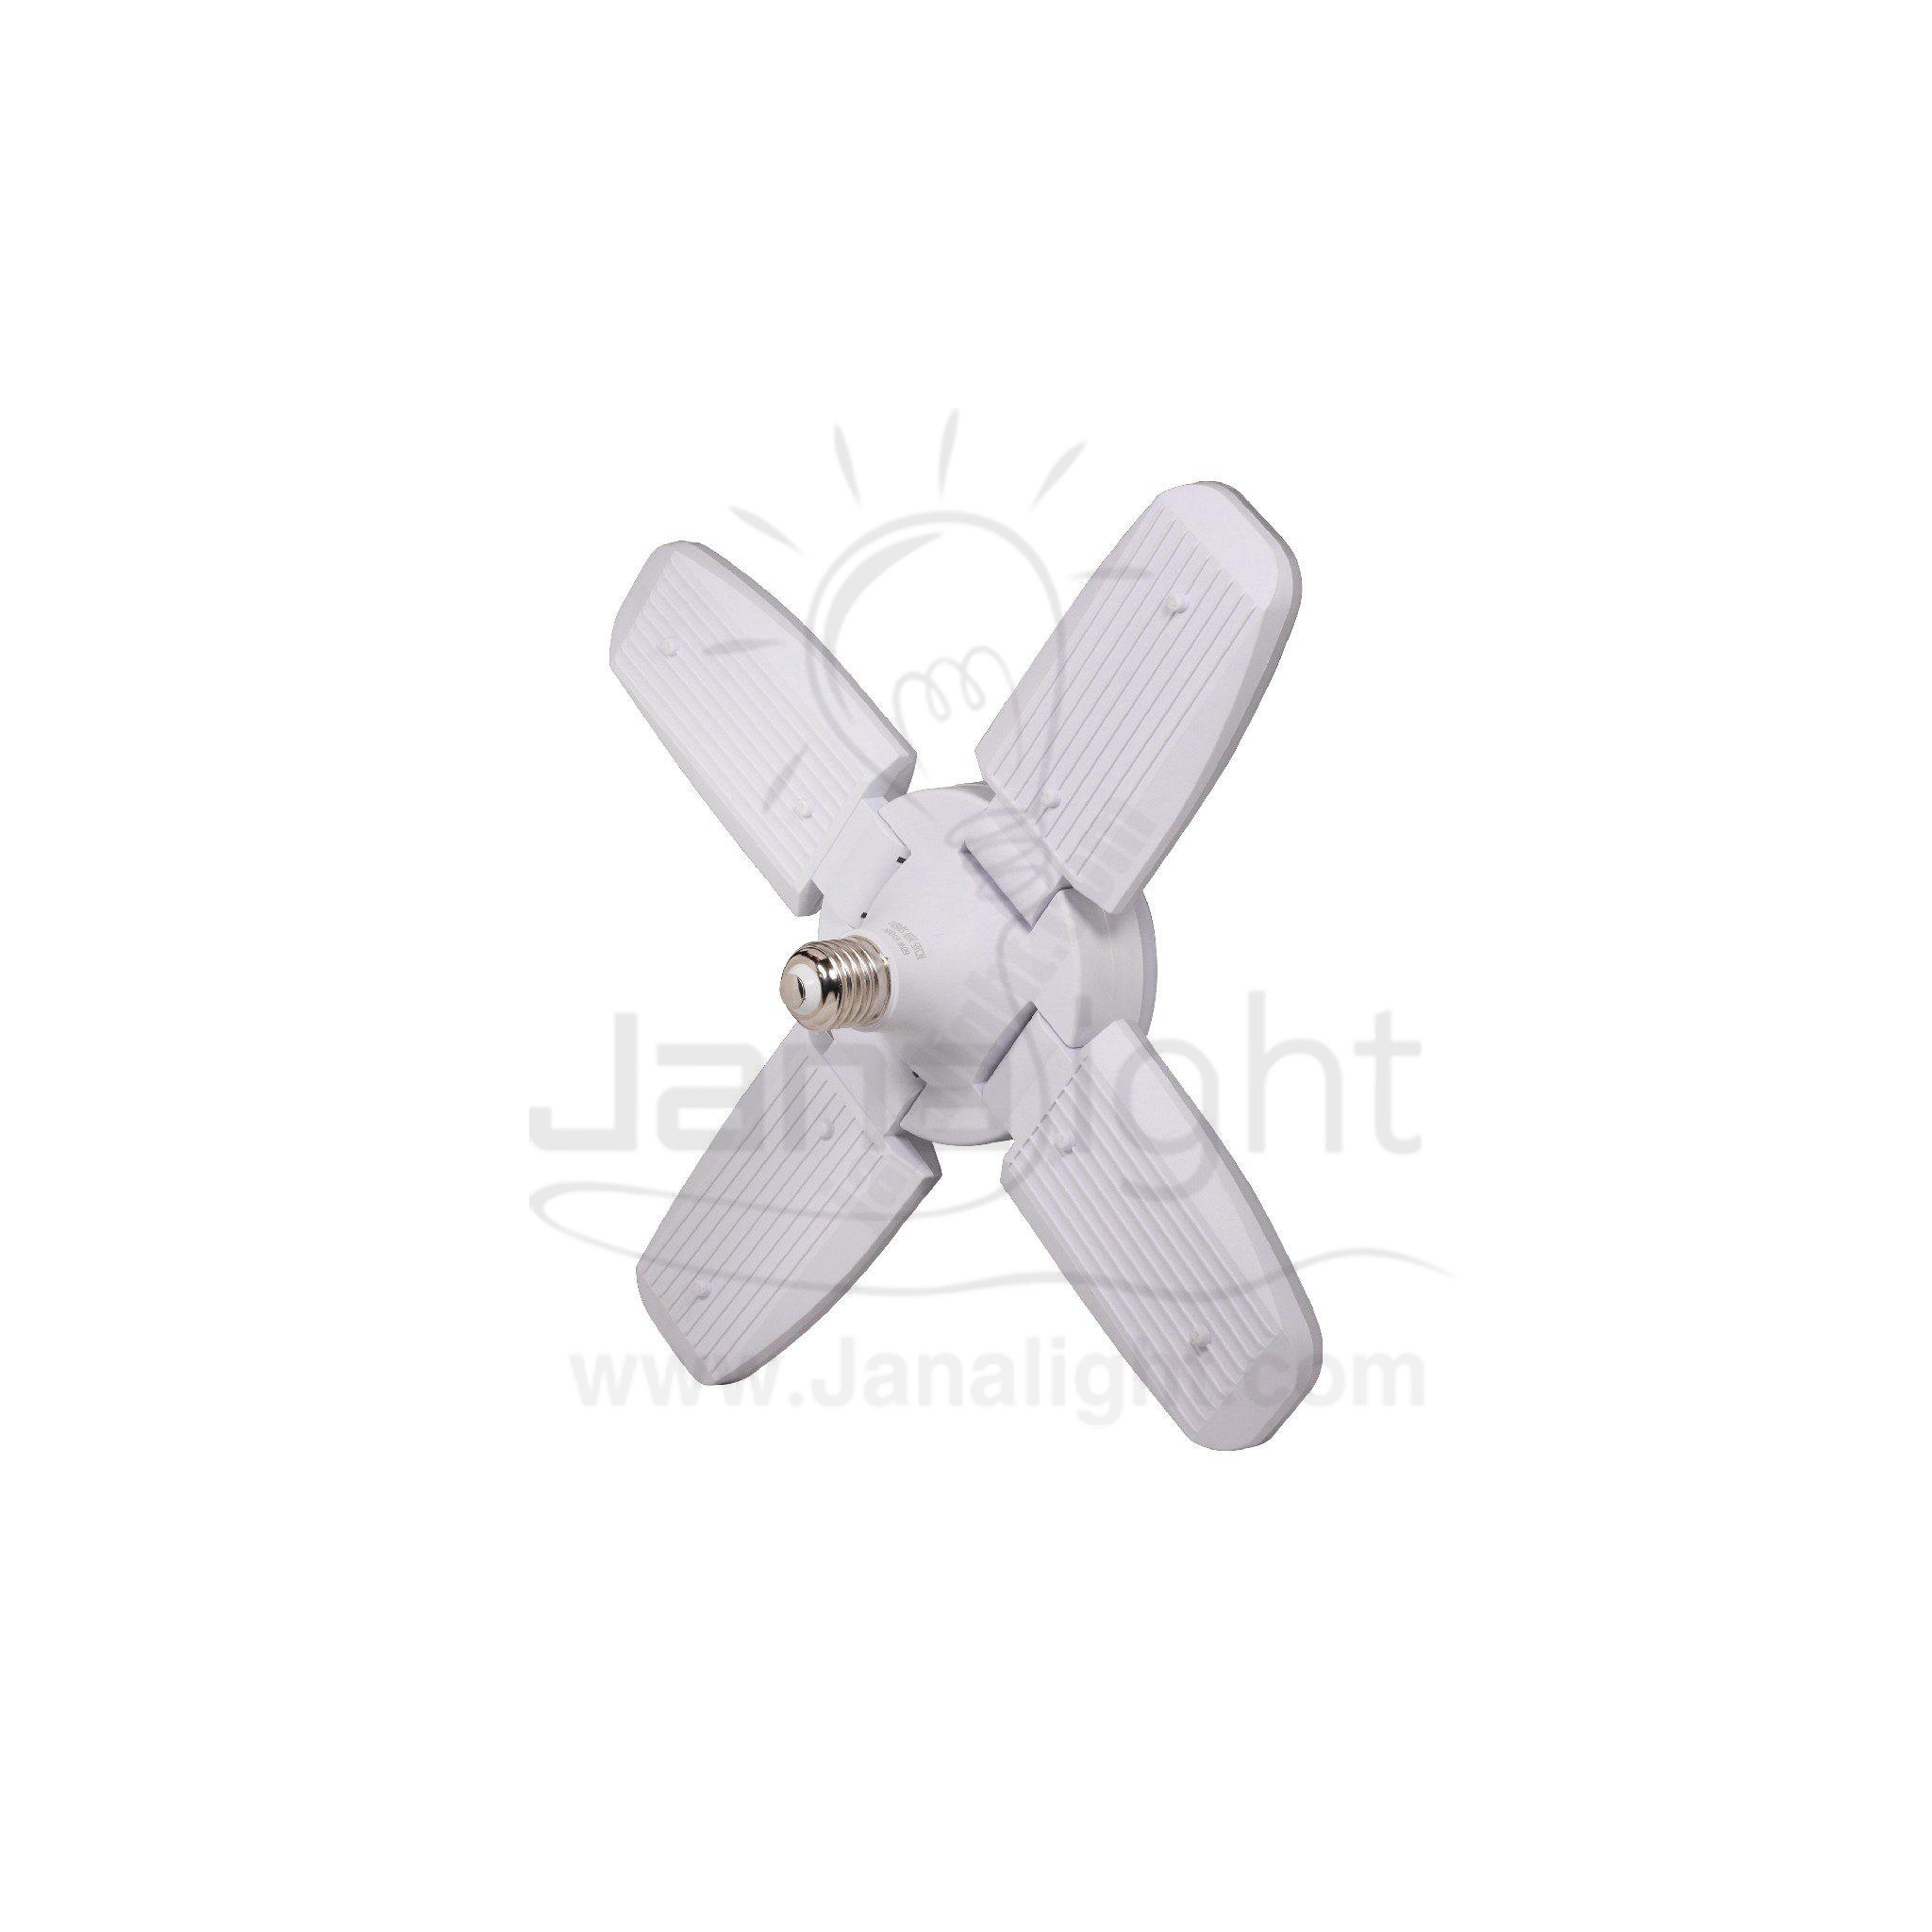 لمبة ابيض 60 وات شكل مروحة كبير  LED Bulbs 4 Blades Fan Shape